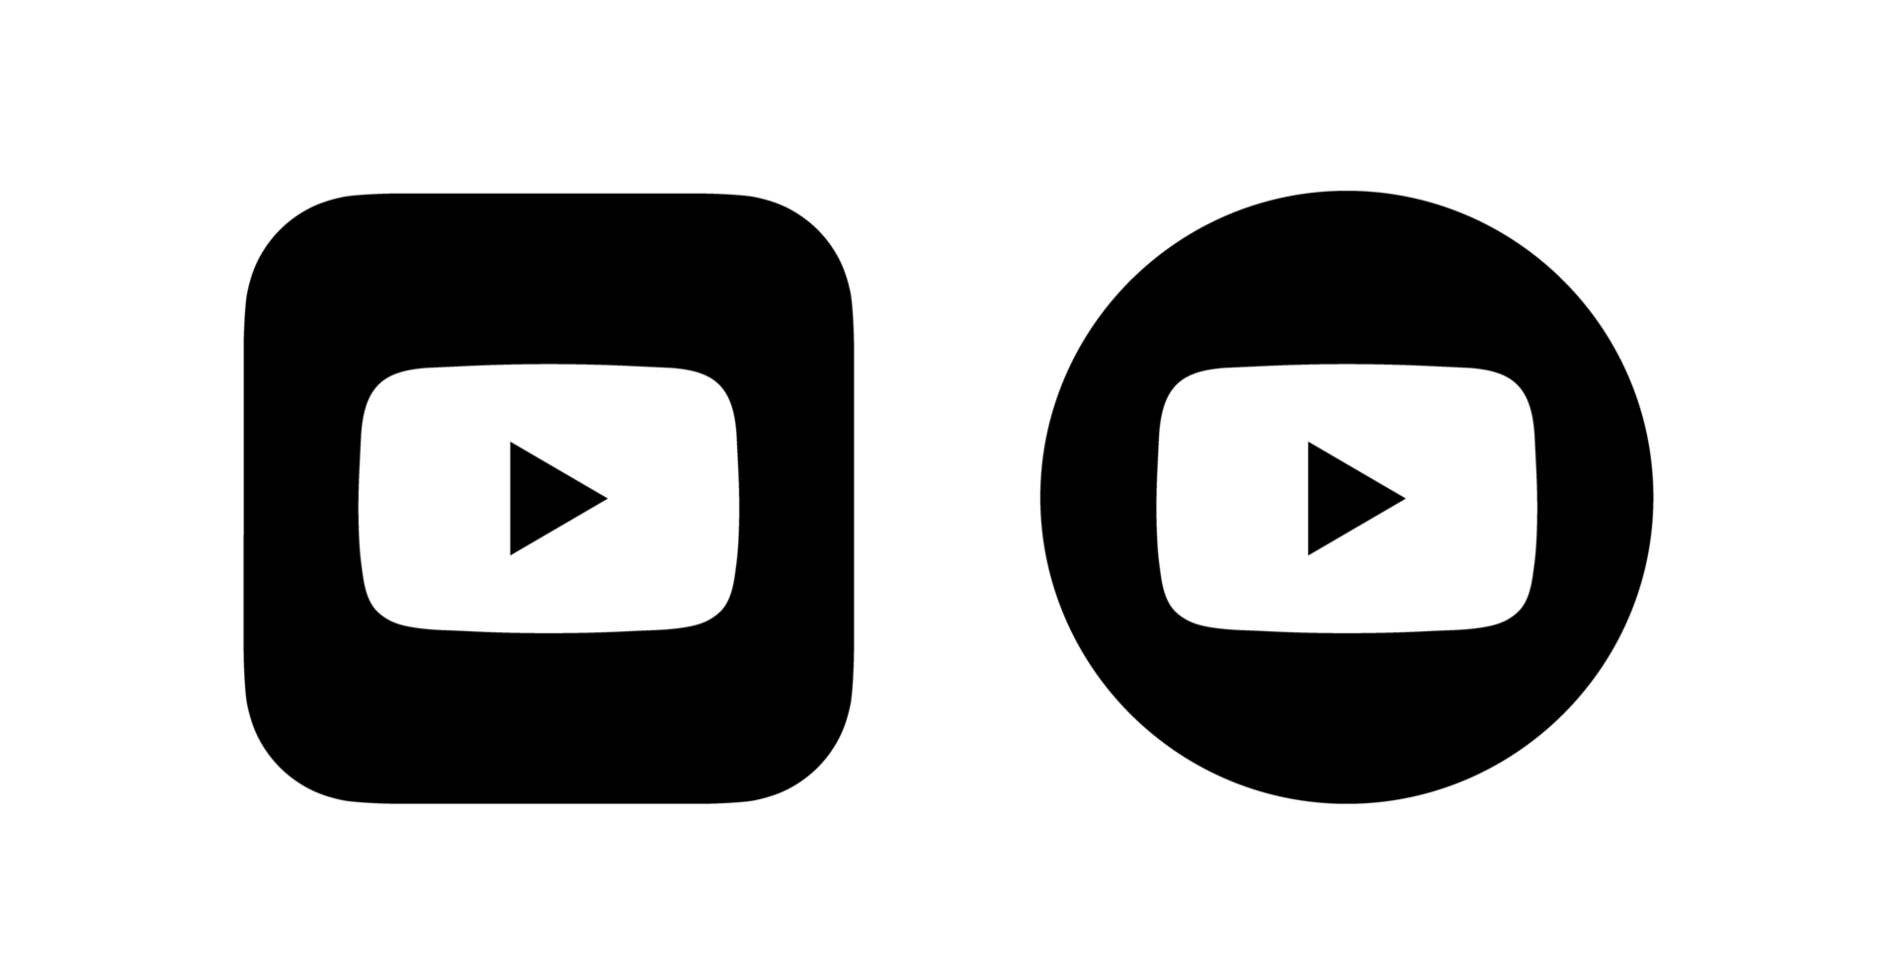 Logo YouTube miễn phí, biểu tượng YouTube trong suốt đang là xu hướng phổ biến trong thời điểm hiện tại. Không chỉ là biểu trưng đặc trưng để đại diện cho kênh Youtube của bạn, mà còn mang tính chuyên nghiệp và hiện đại. Hãy xem hình ảnh liên quan để tìm hiểu thêm về logo hoàn toàn miễn phí này.